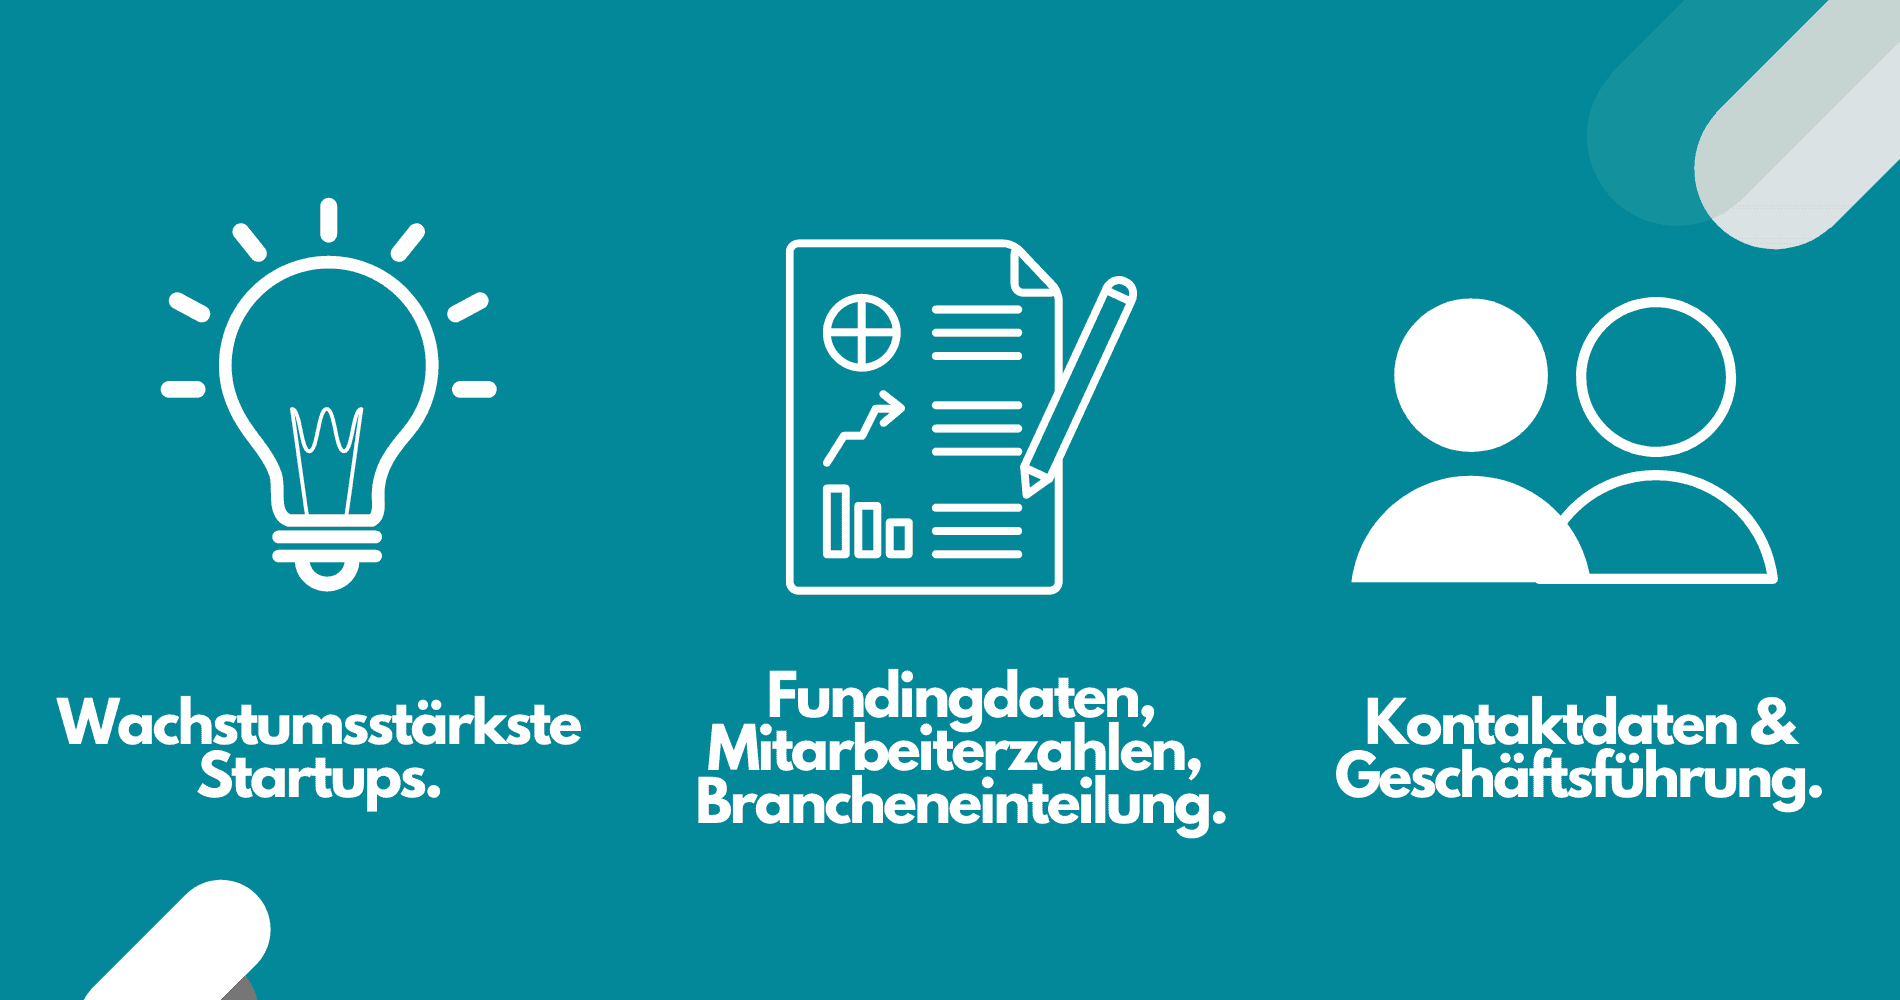 verzeichnis wachstumsstärkste startups deutschland